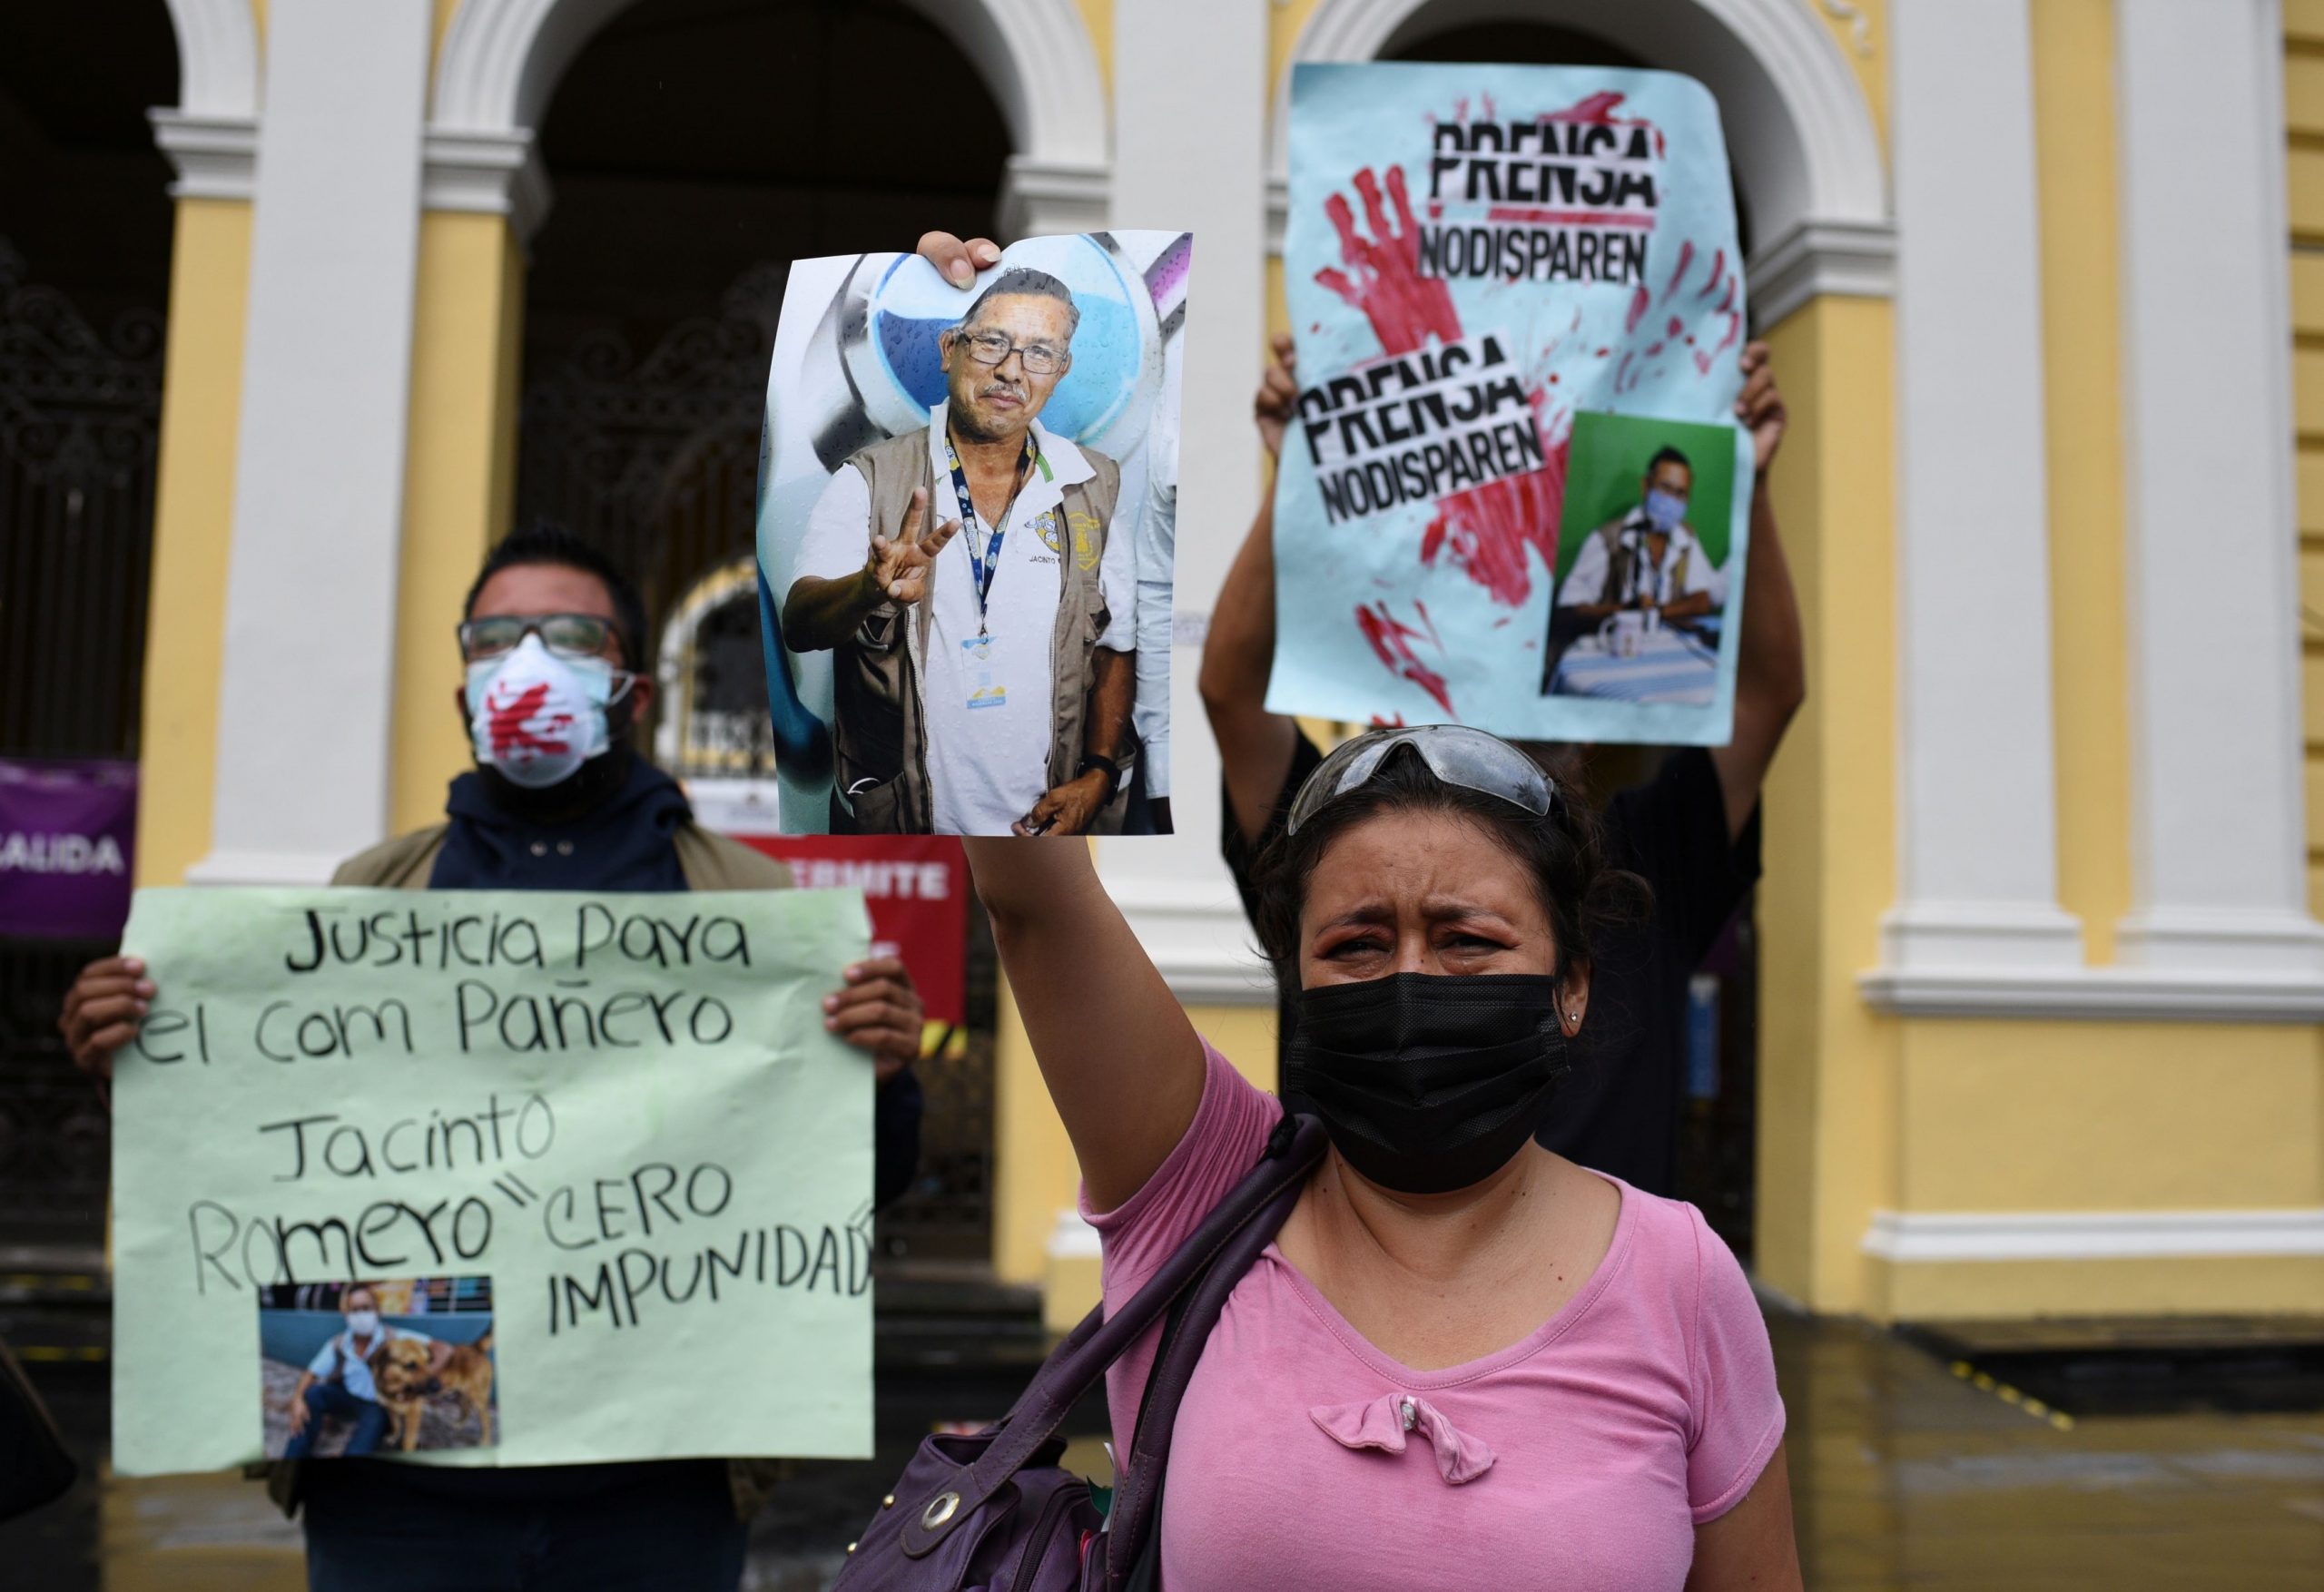 Νέα δολοφονία δημοσιογράφου στο Μεξικό